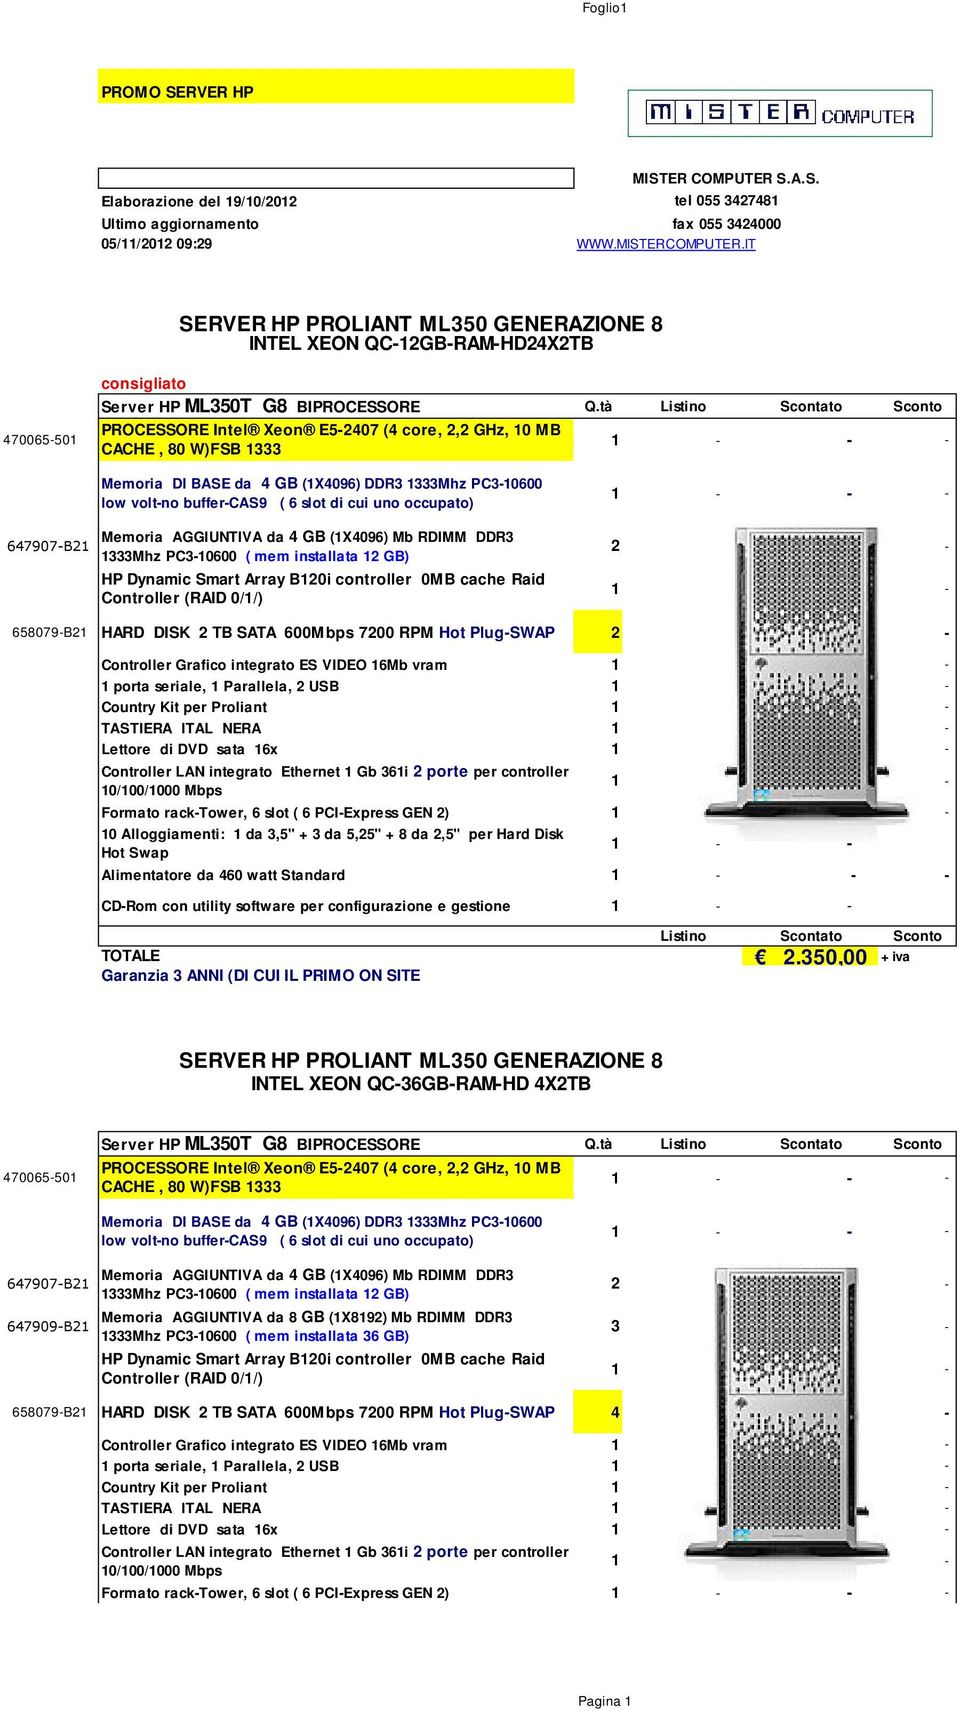 tà Listino Scontato Sconto PROCESSORE Intel Xeon E5-2407 (4 core, 2,2 GHz, 10 MB CACHE, 80 W)FSB 1333 647907-B21 Memoria DI BASE da 4 GB (1X4096) DDR3 1333Mhz PC3-10600 low volt-no buffer-cas9 ( 6